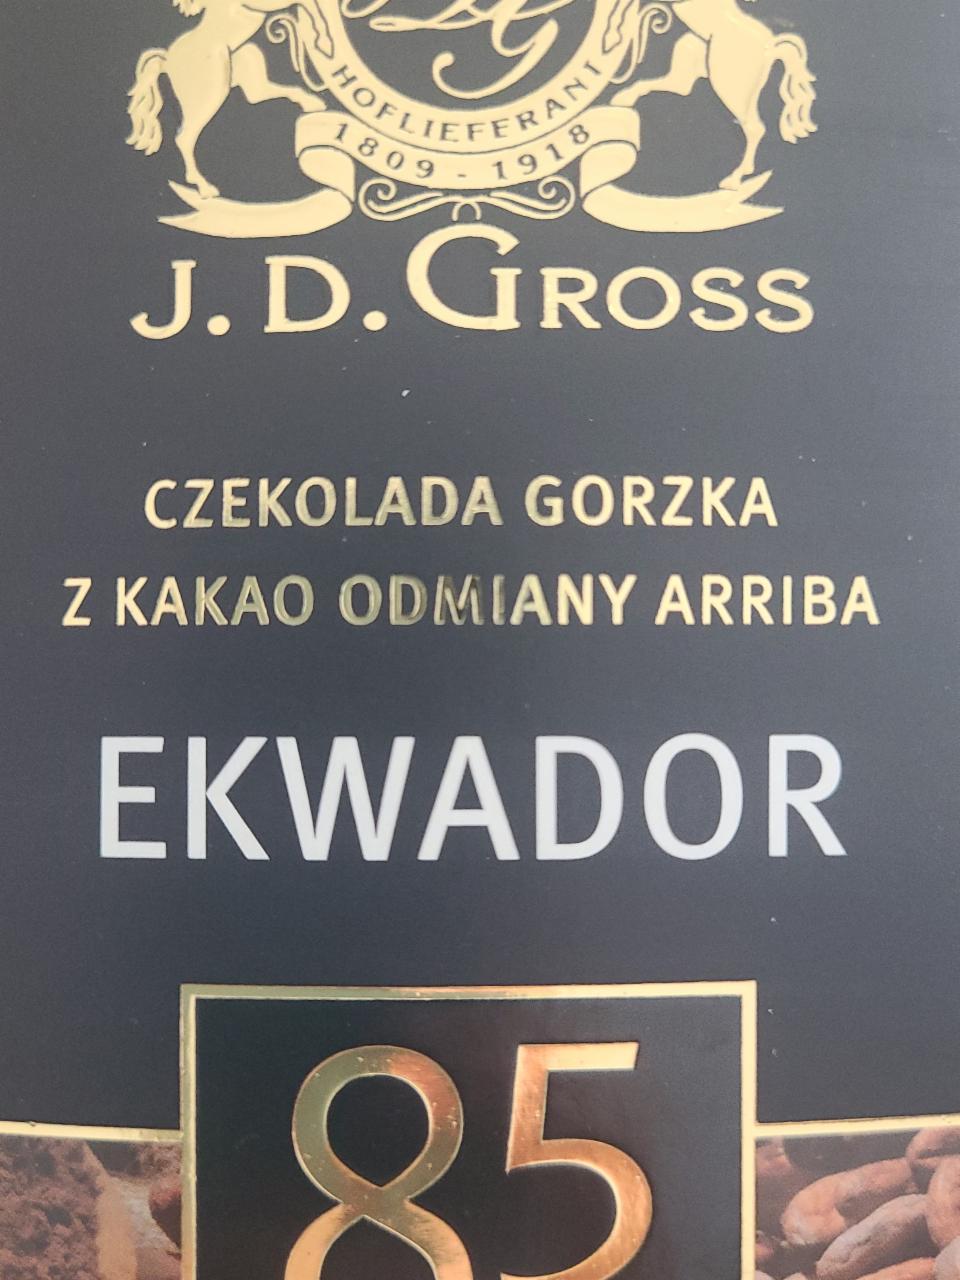 Zdjęcia - Czekolada gorzka EKWADOR 85% cacao J.D. Gross